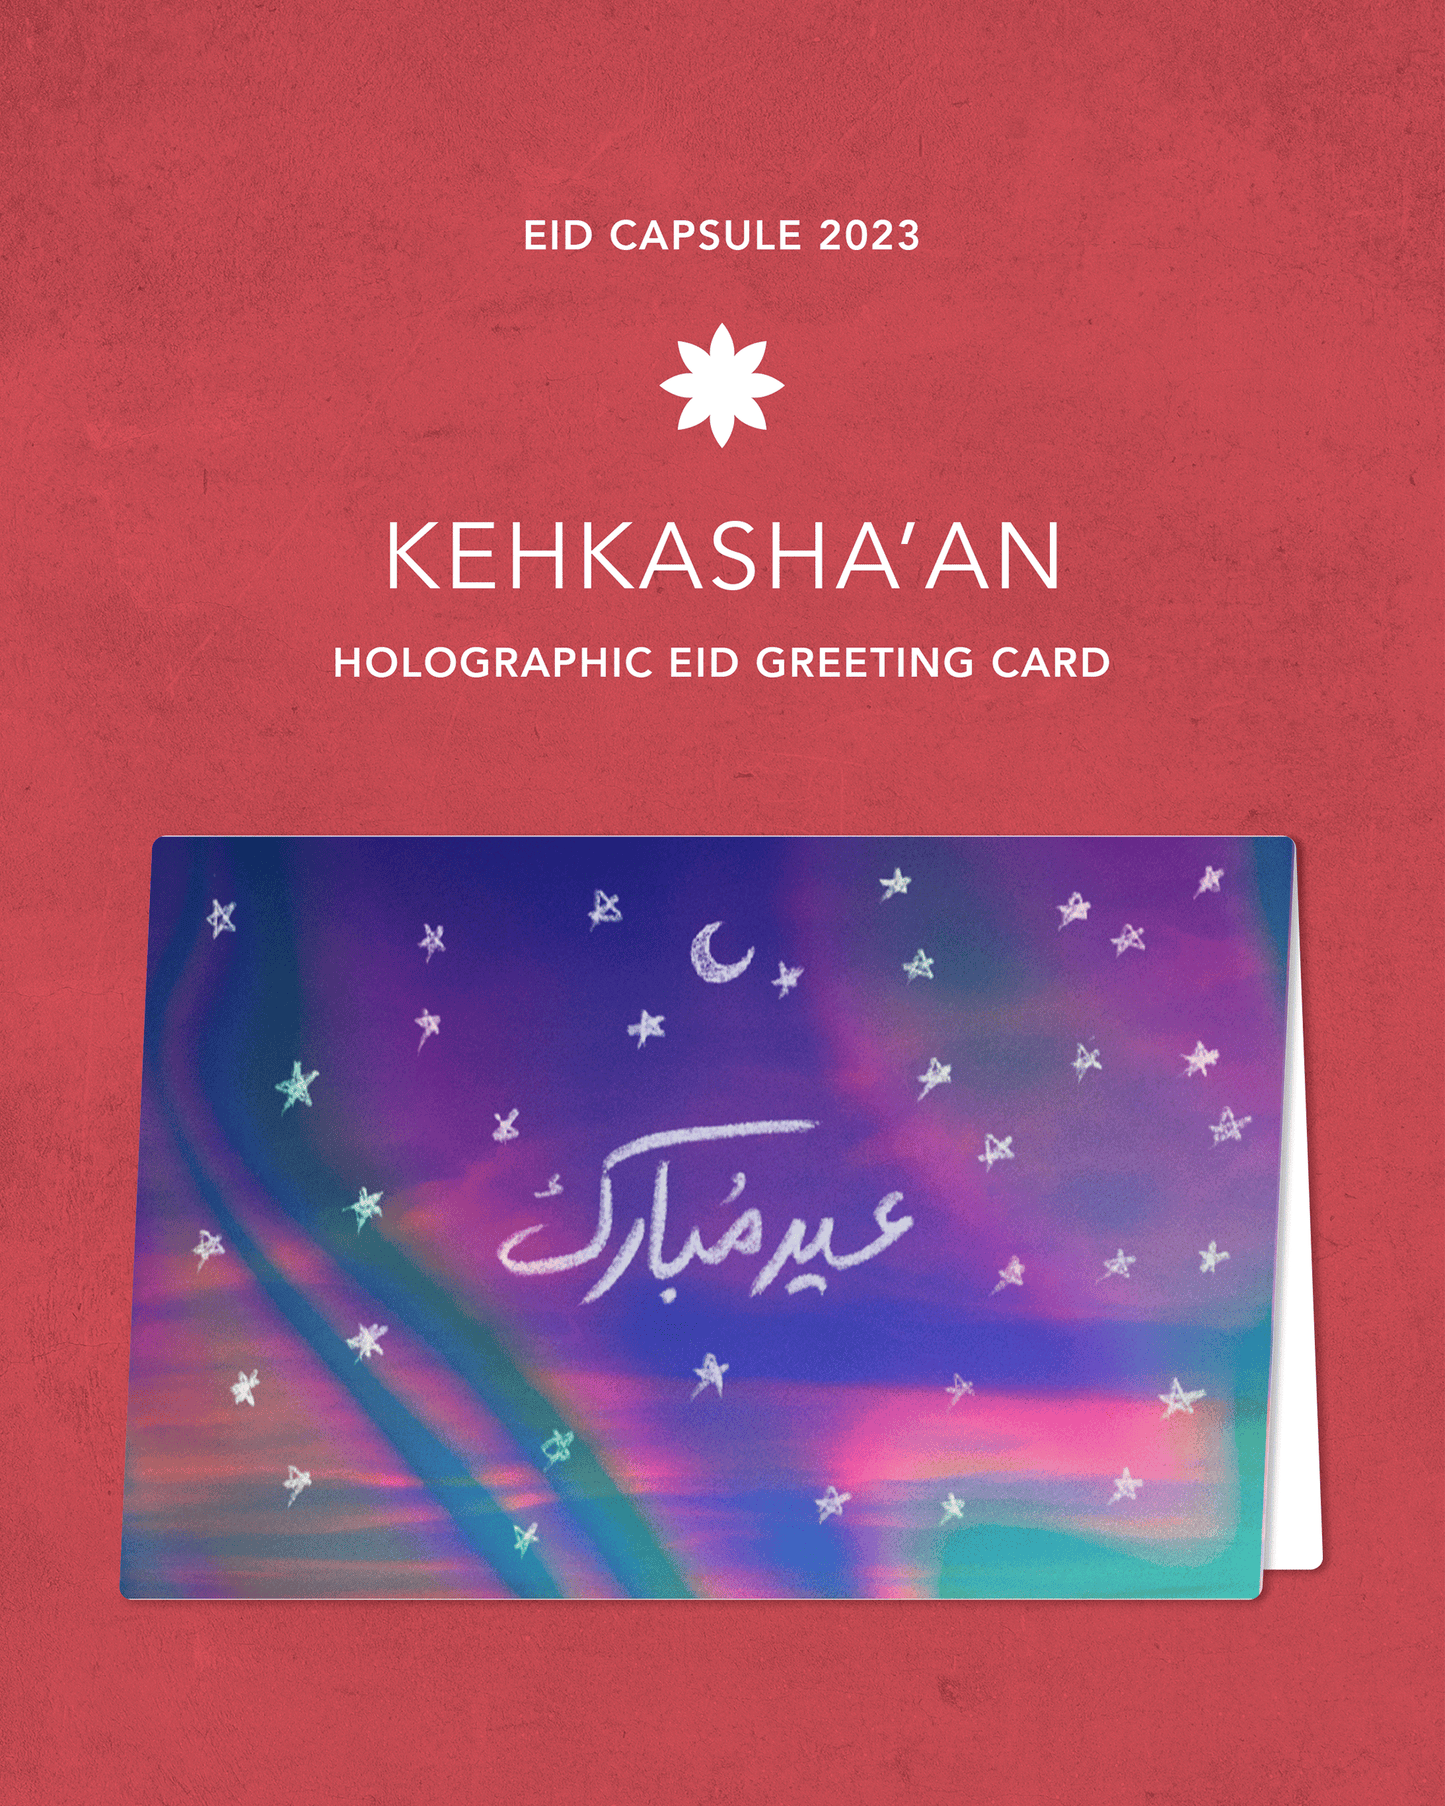 CHAMAK DAMAK - Set of 2 Holographic Eid Cards